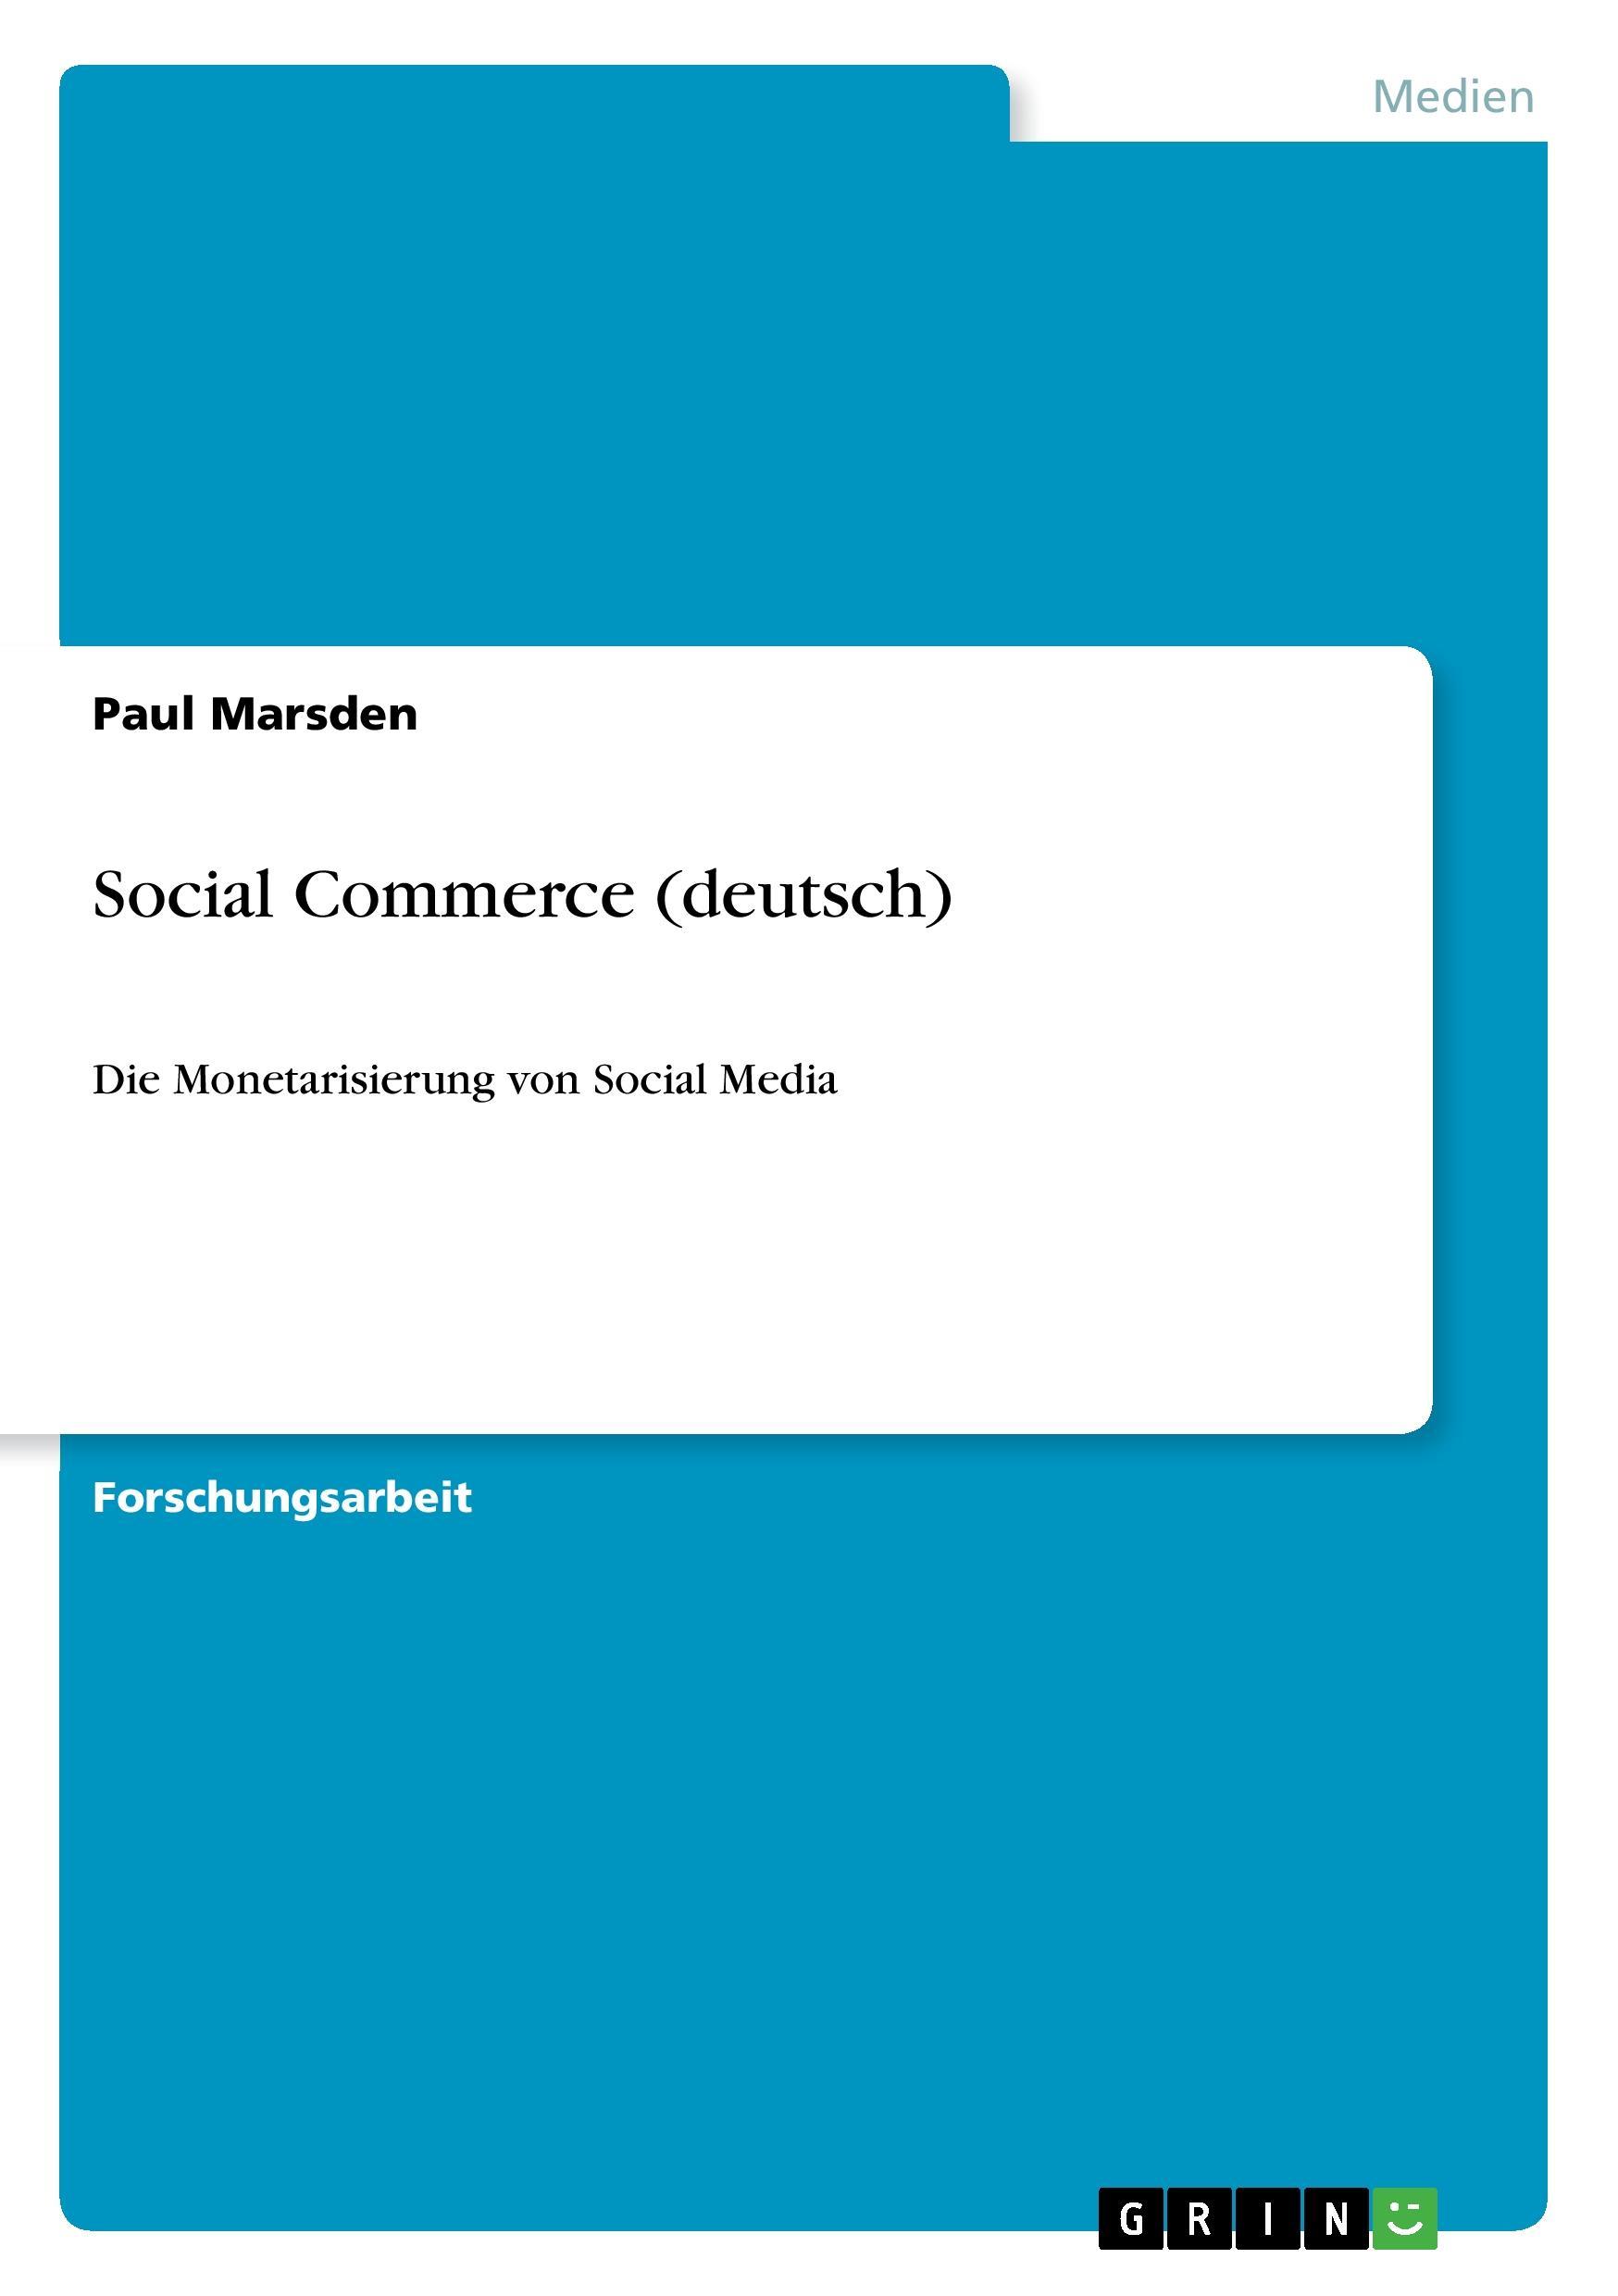 Social Commerce (deutsch) - Marsden, Paul